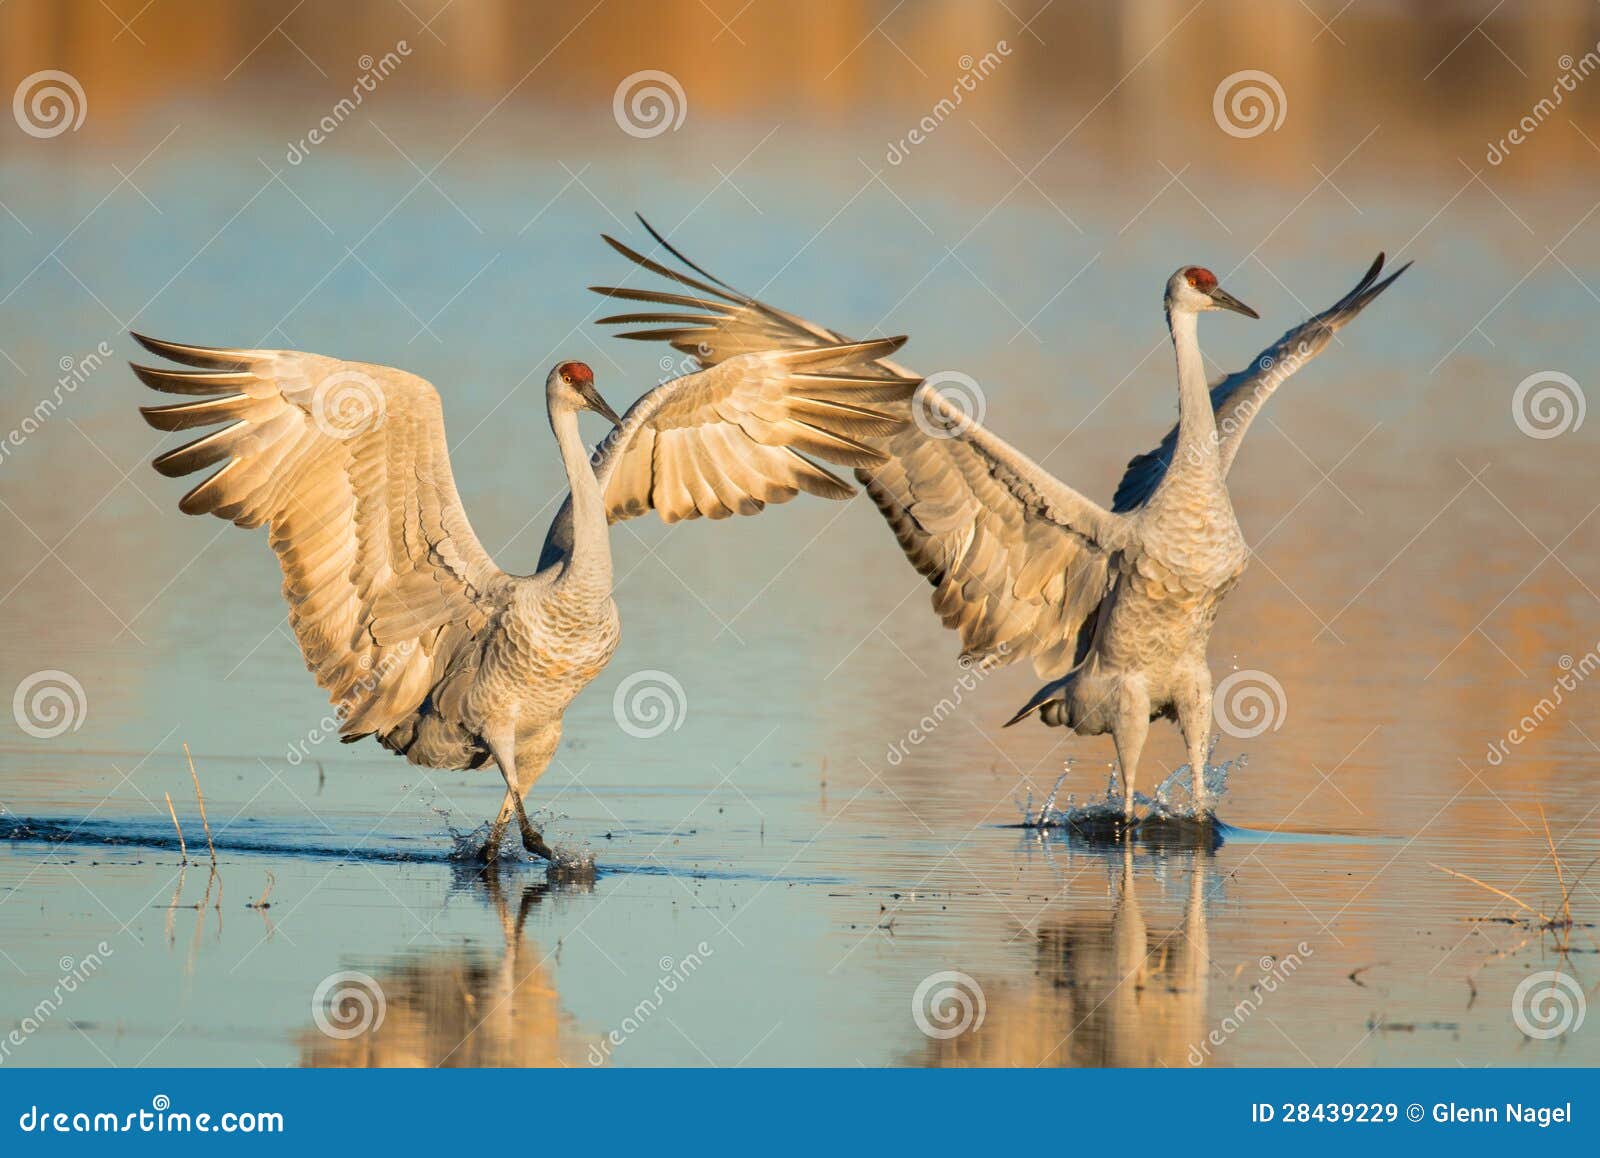 a pair of sandhill crane